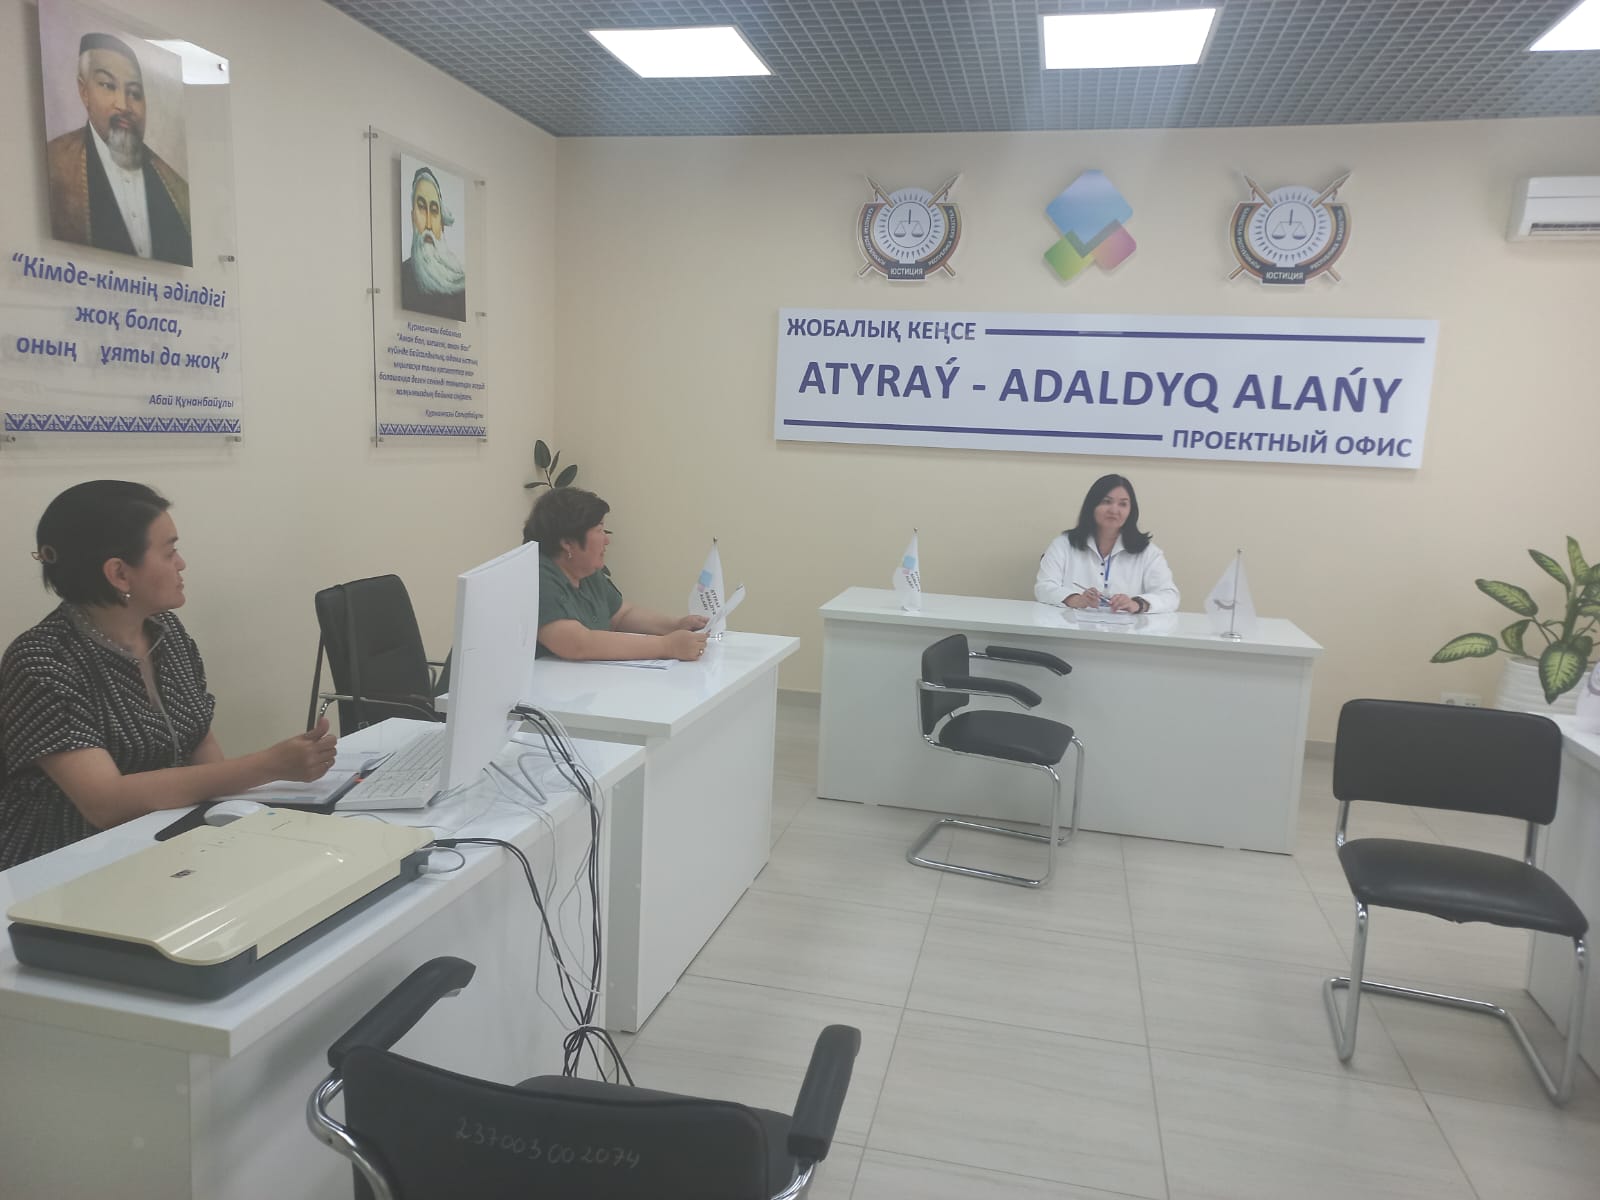 В проектном офисе "ATYRAU-ADALDYQ ALANY" проведен круглый стол, организованный отделом регистрации нормативных правовых актов департамента юстиции Атырауской области.